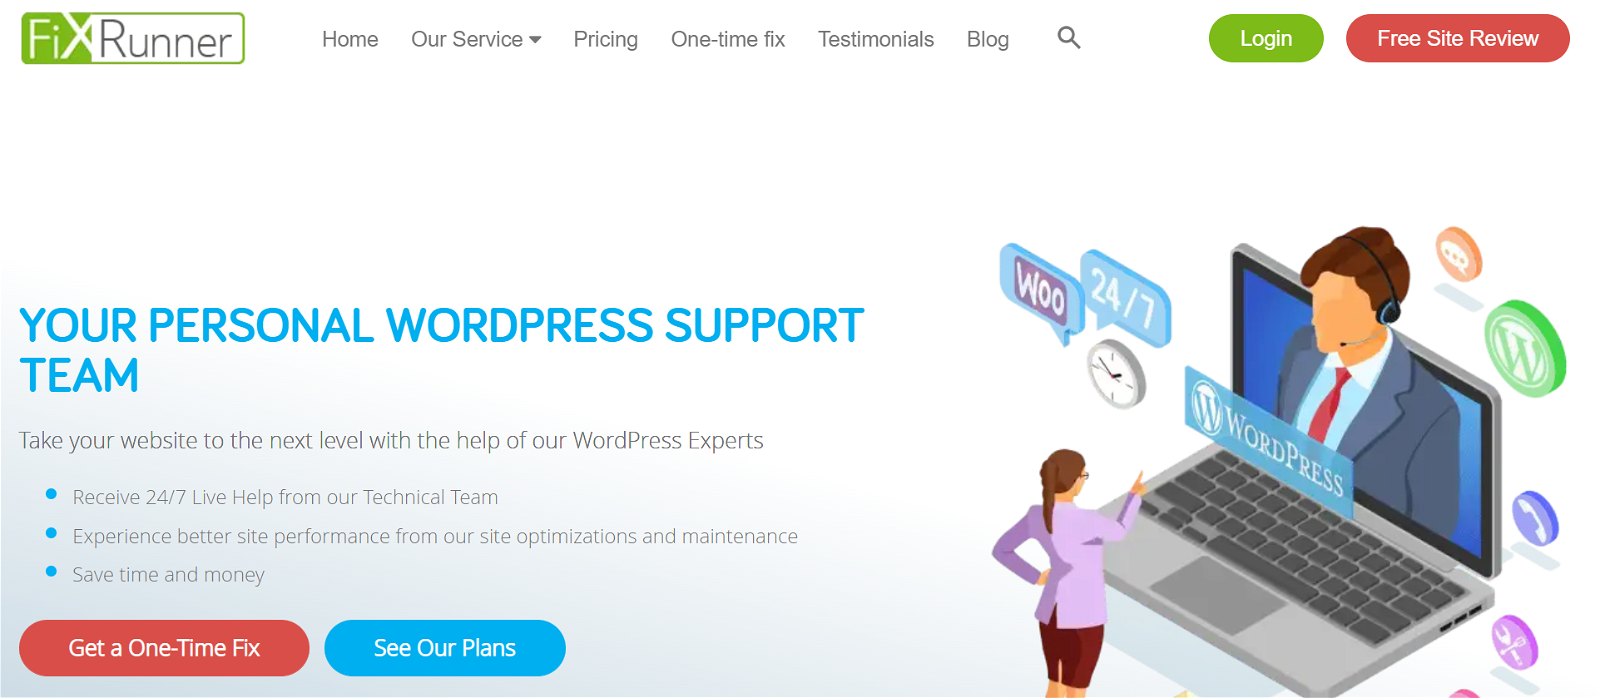 Fixrunner wordpress services